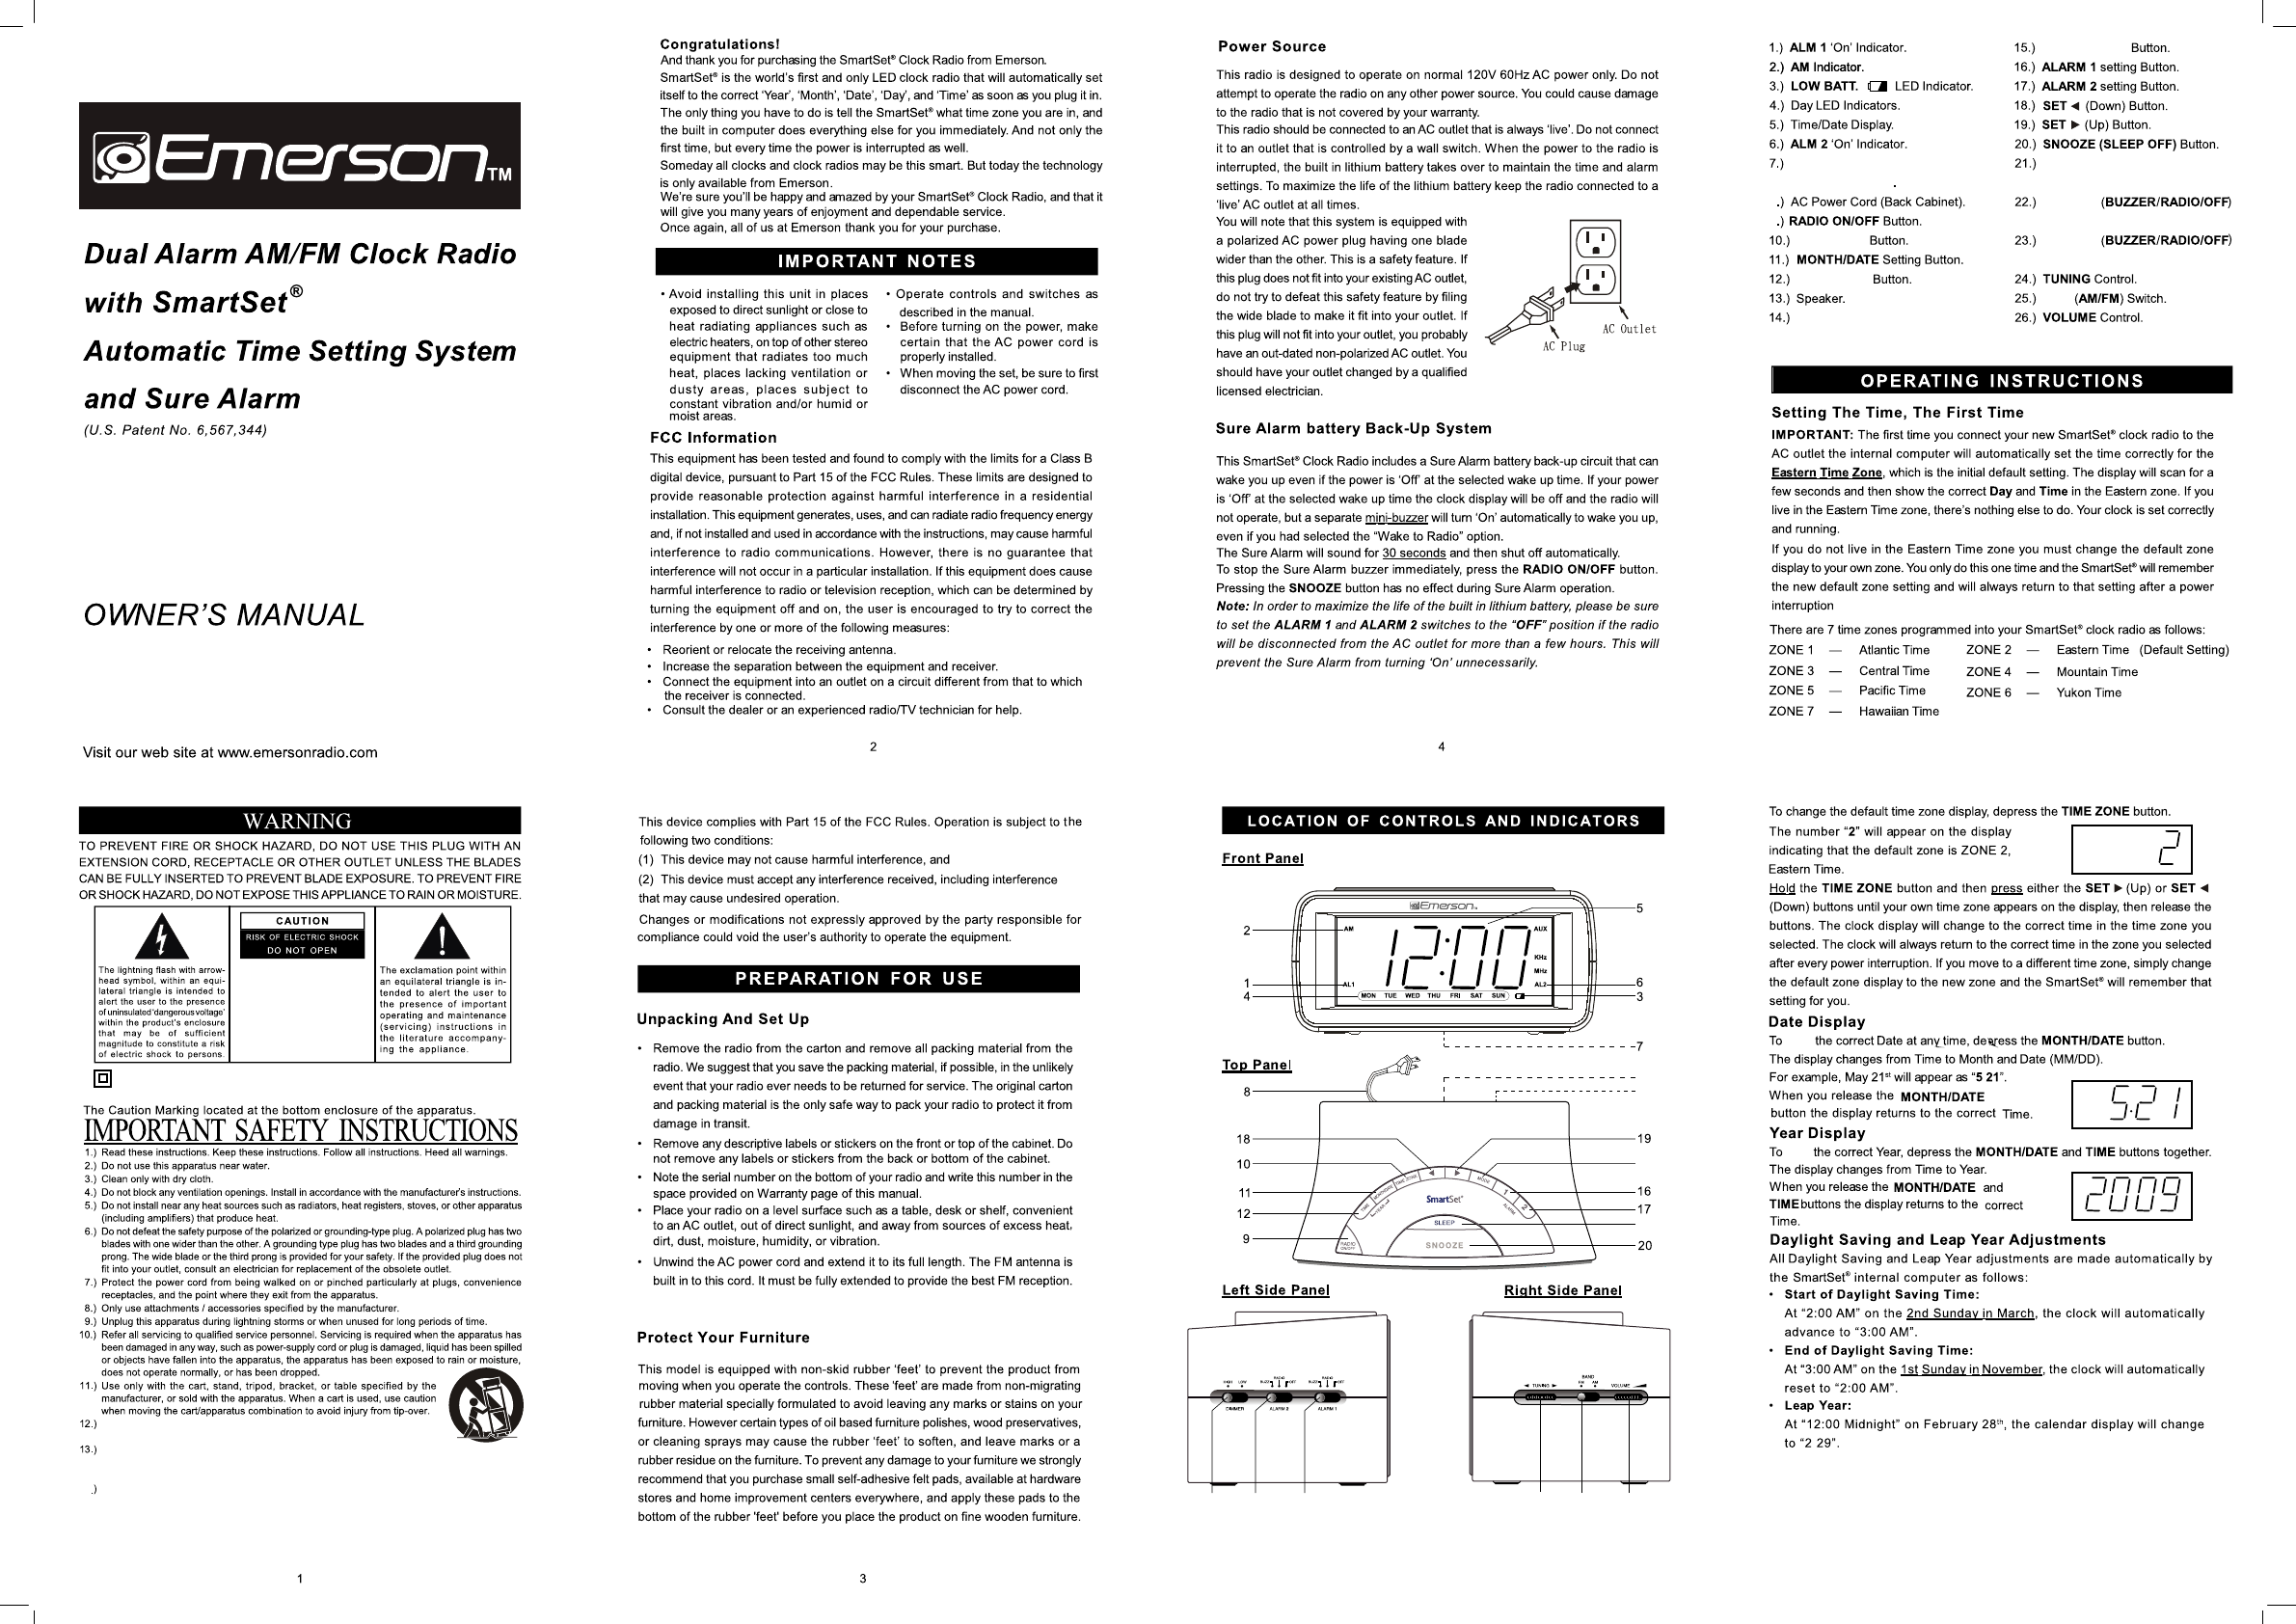 emerson smart set cks1507 manual pdf